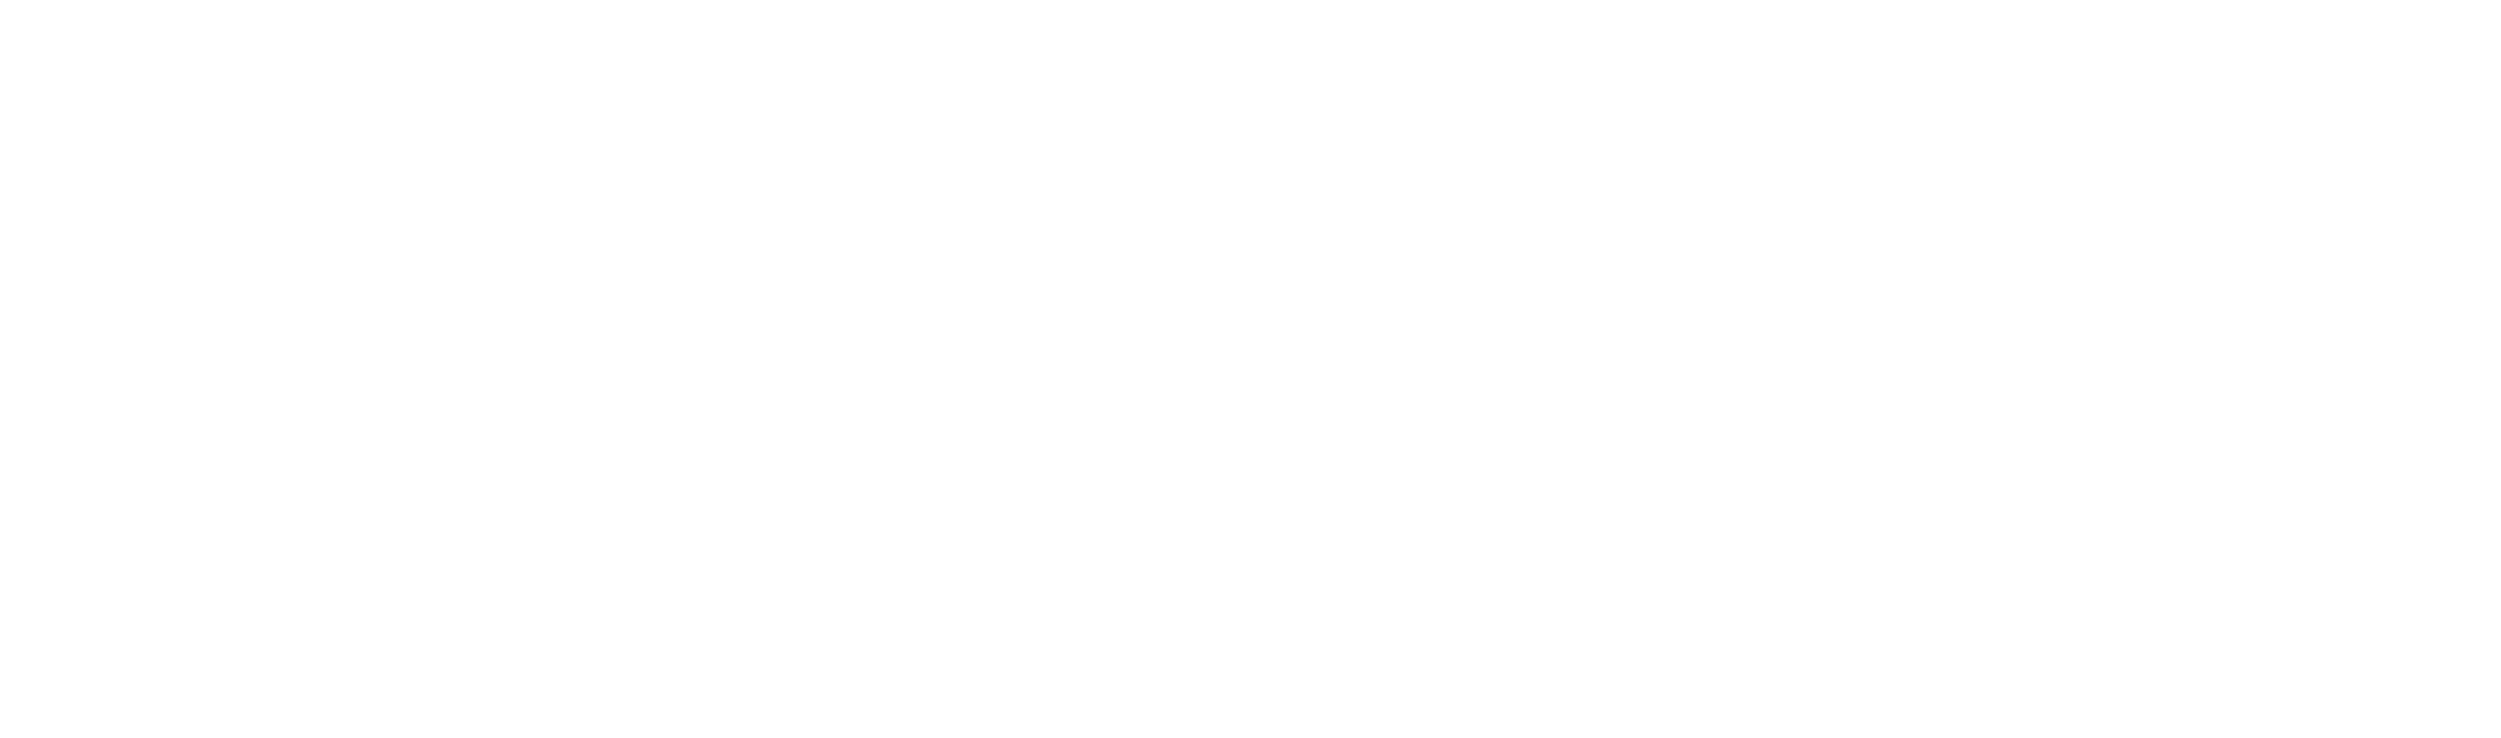 Kris Lindahl Real Estate Scholarship